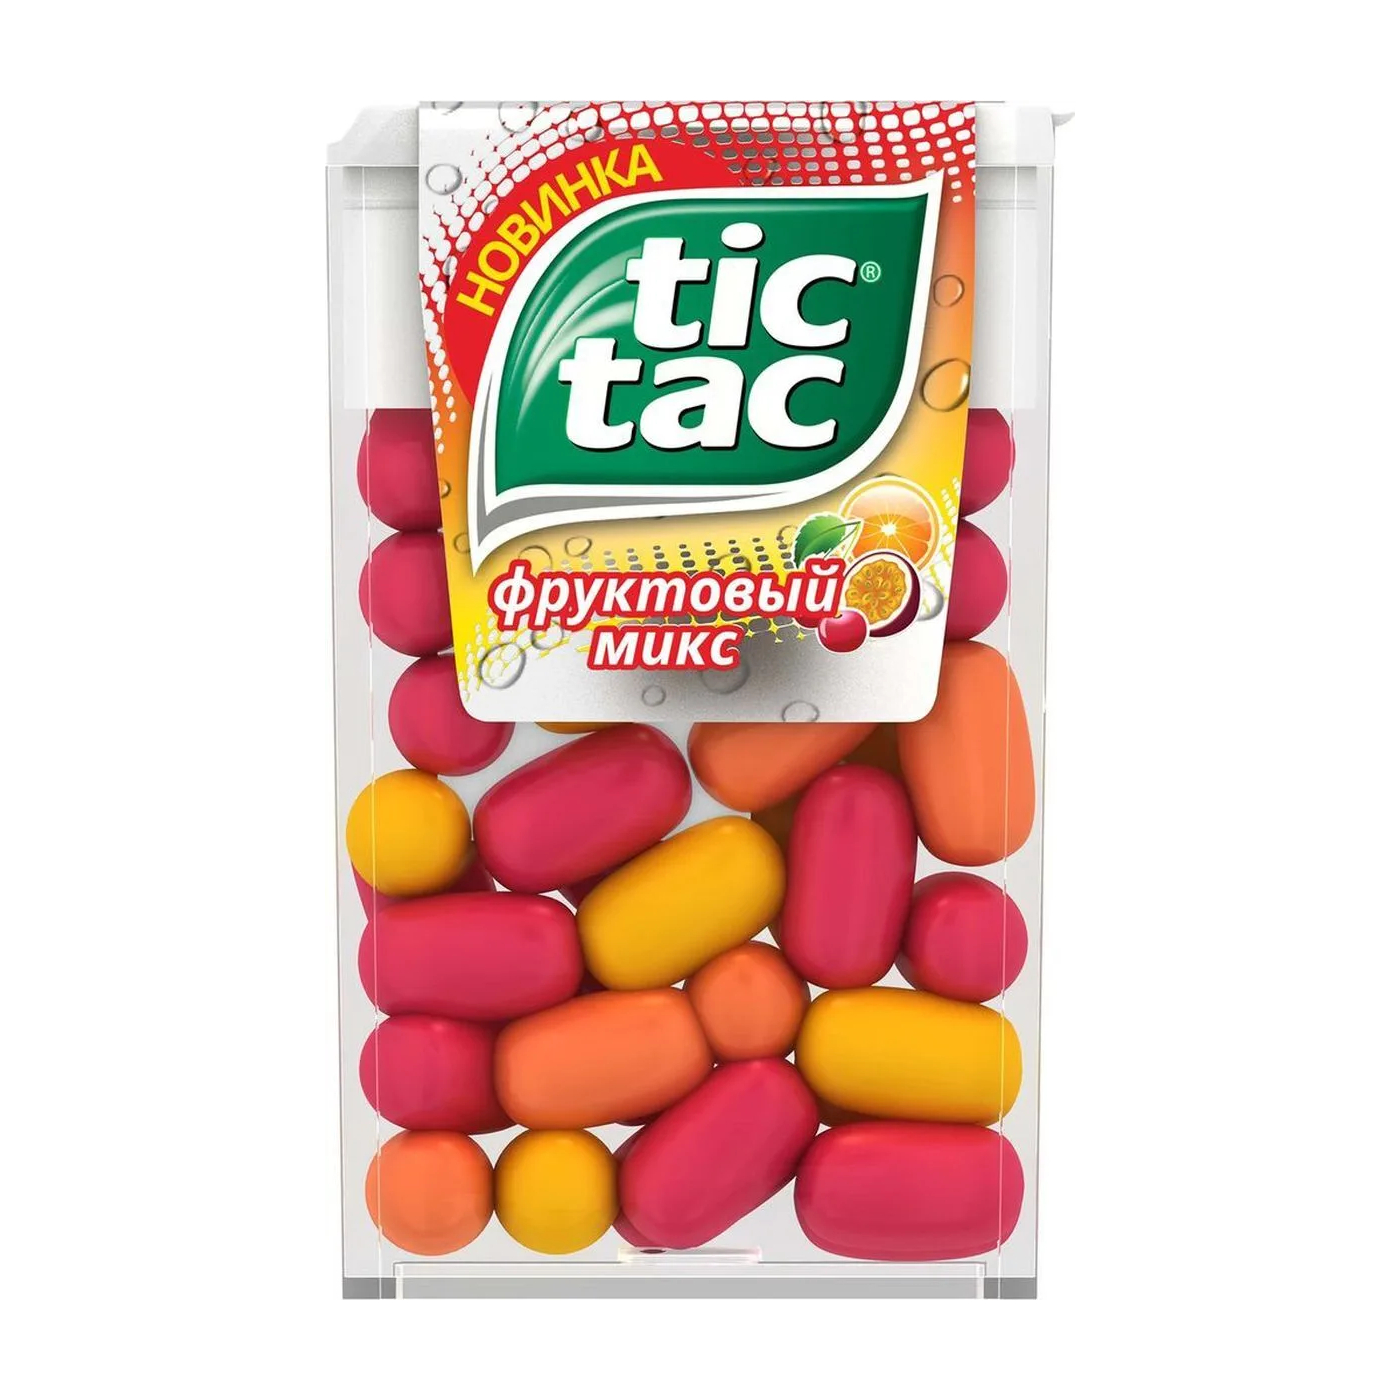 Драже Tic Tac фруктовый микс, 16 г драже tic tac мята 16 г